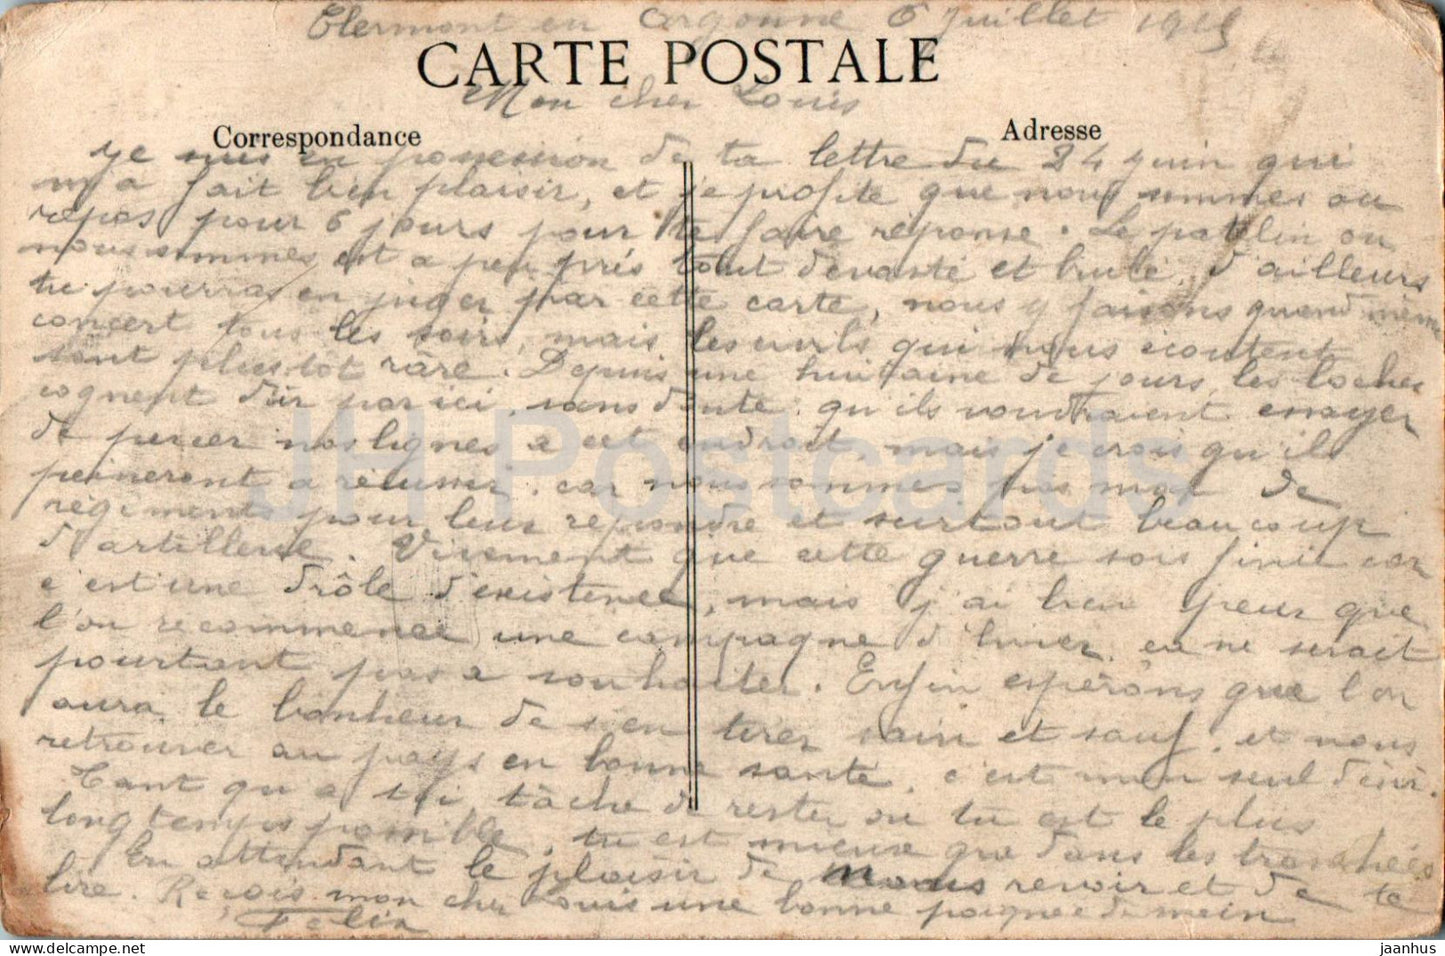 1914-1915 Clermont En Argonne - La Cote Sainte Anne - Saint Anne Mount - 152 - old postcard - 1919 - France - used